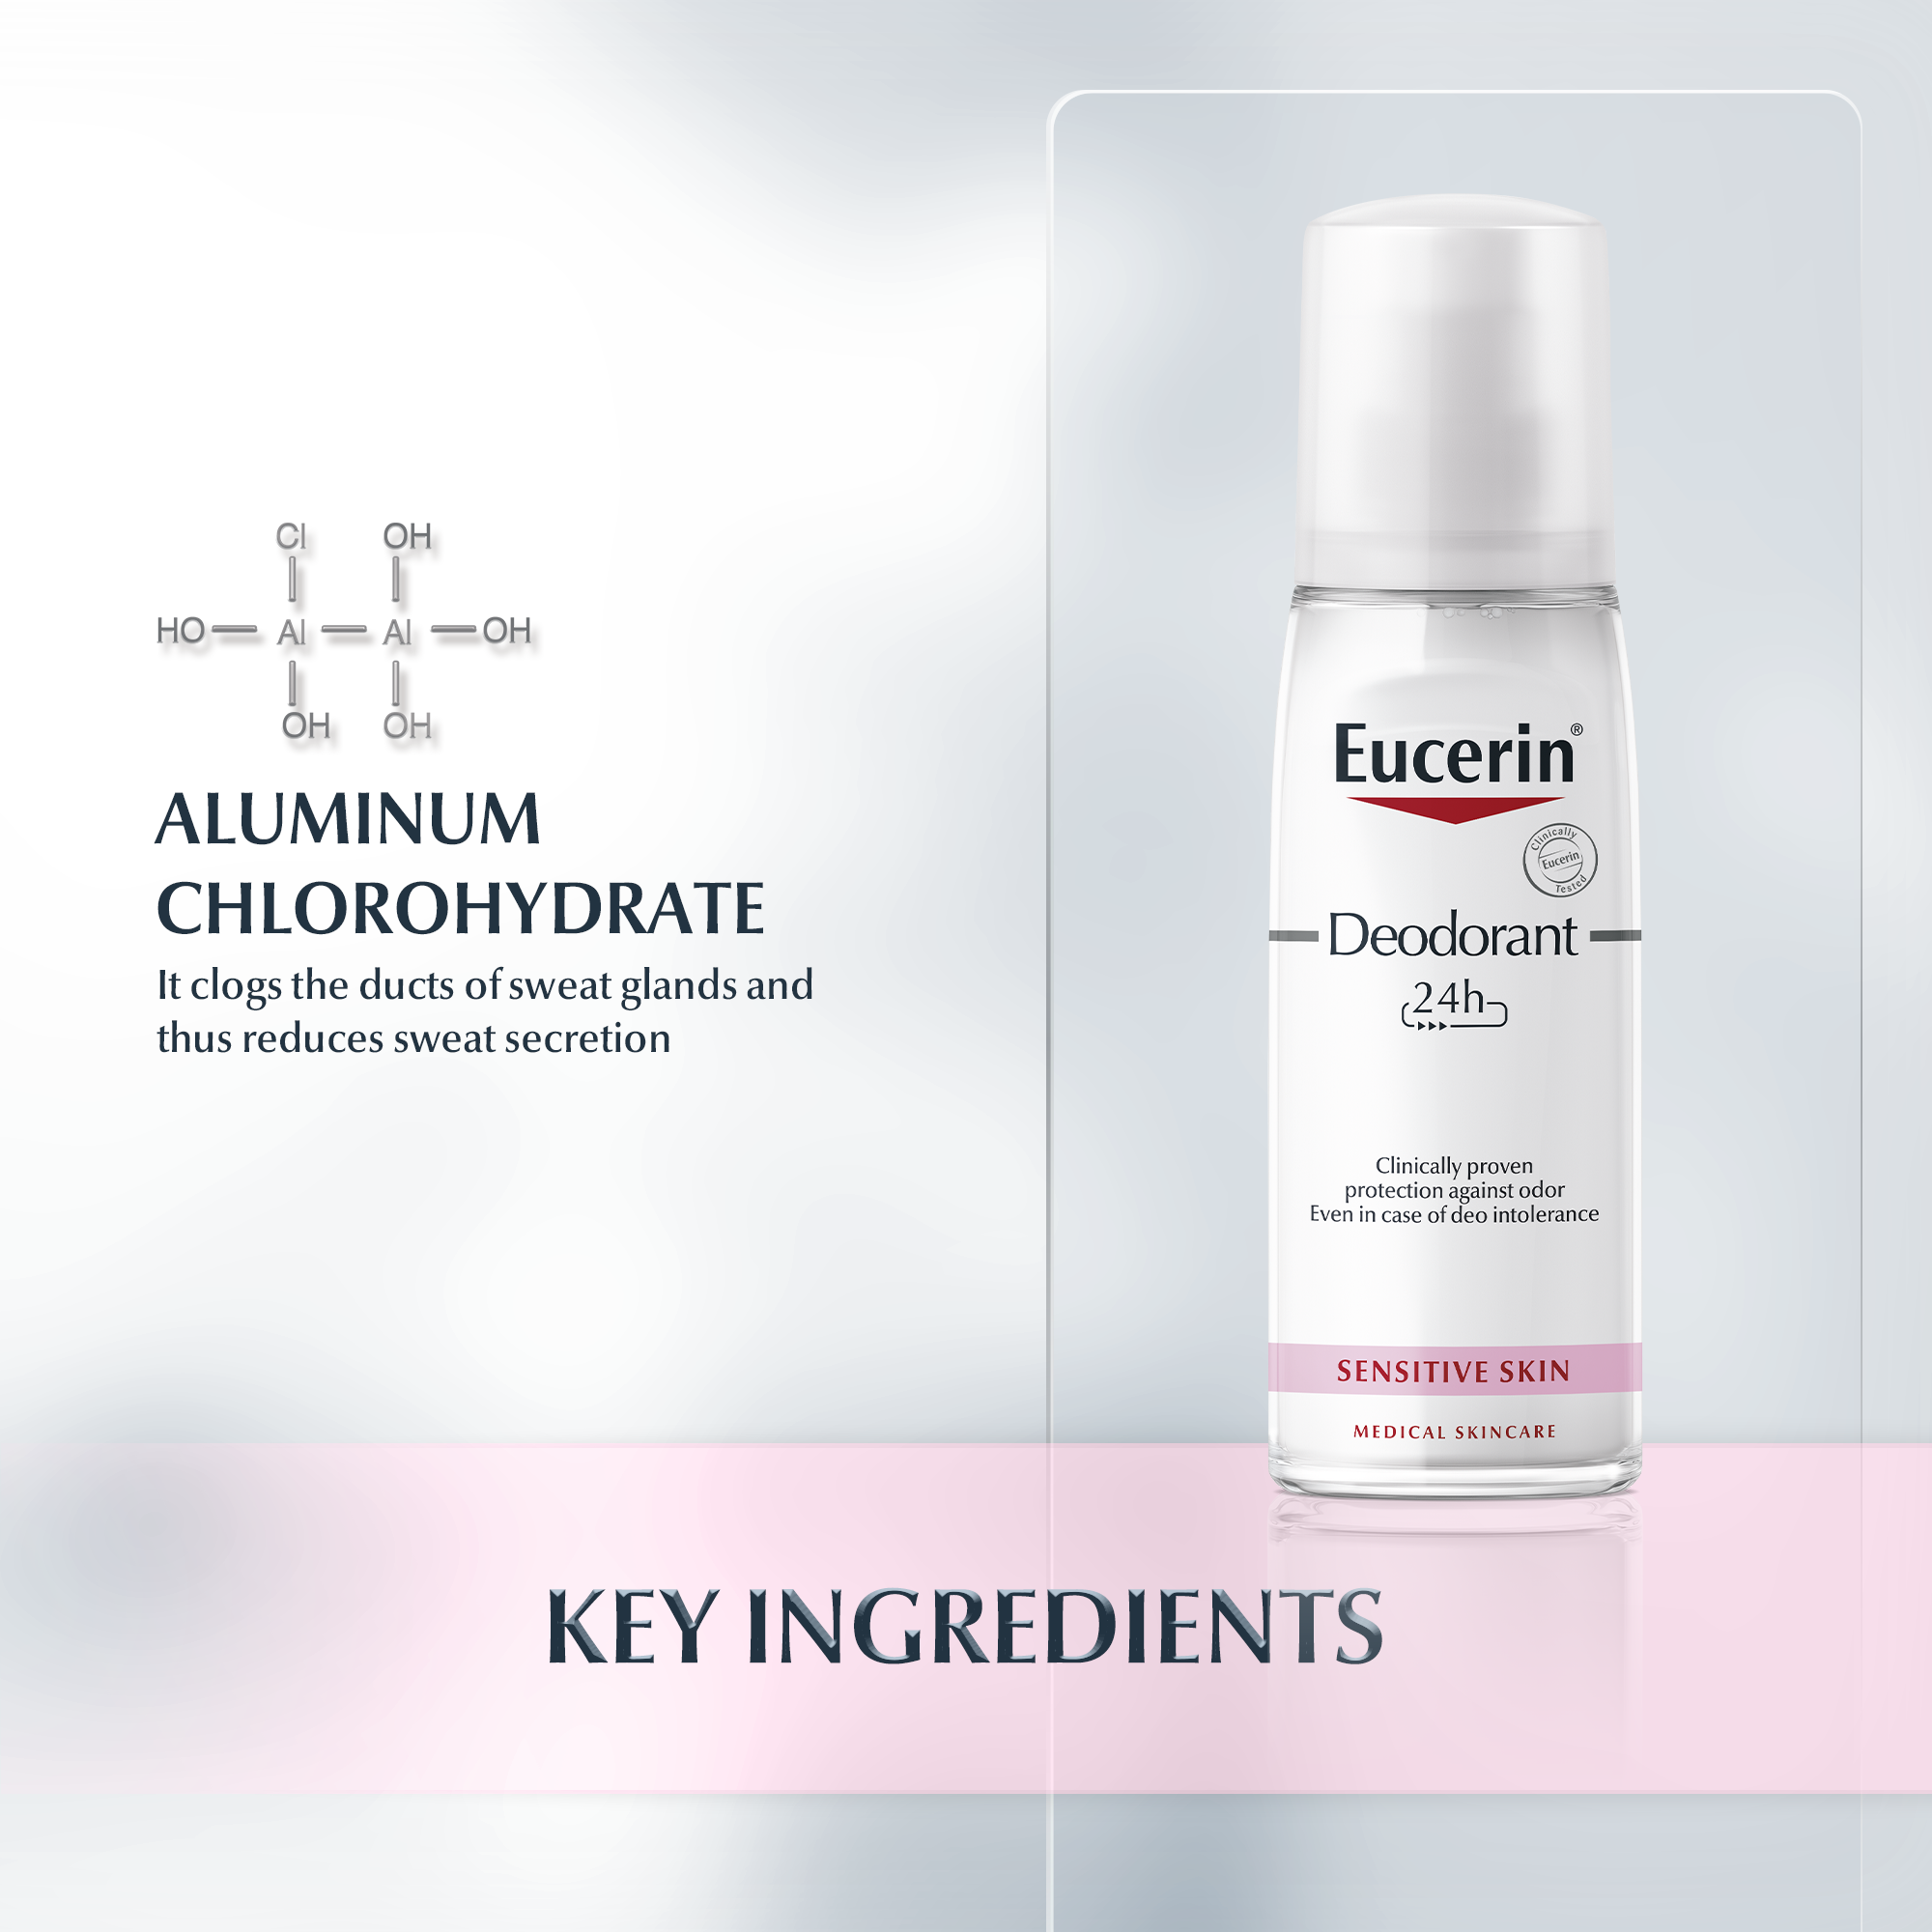 lærred erhvervsdrivende psykologisk 24h Deodorant Sensitive Skin Pump Spray| for sensitive skin | Eucerin